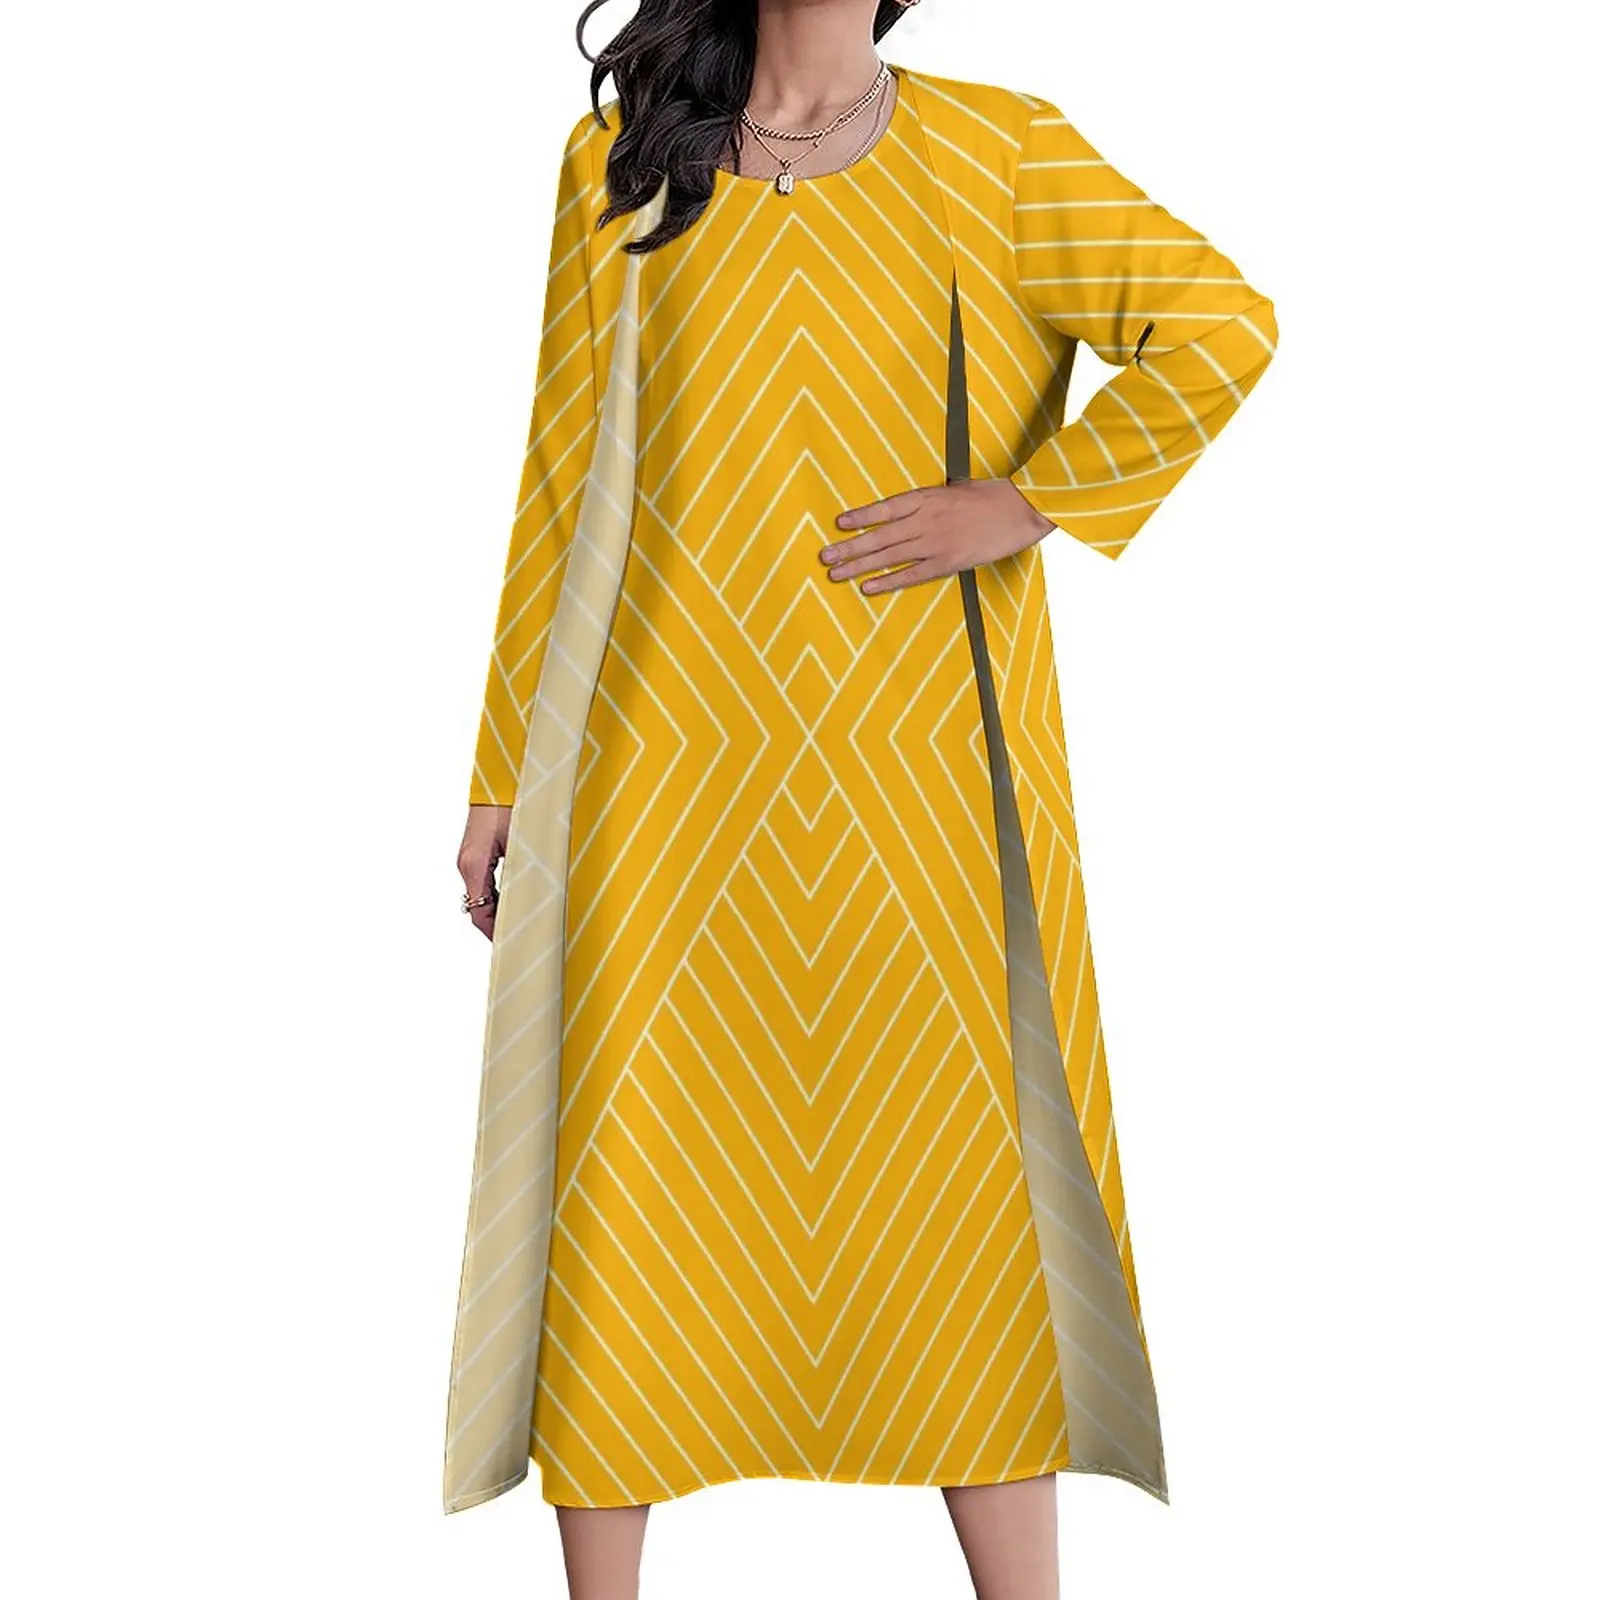 

Платье женское длинное в скандинавском стиле, повседневная винтажная уличная одежда из двух предметов, желтое платье макси в стиле арт-деко, подарок